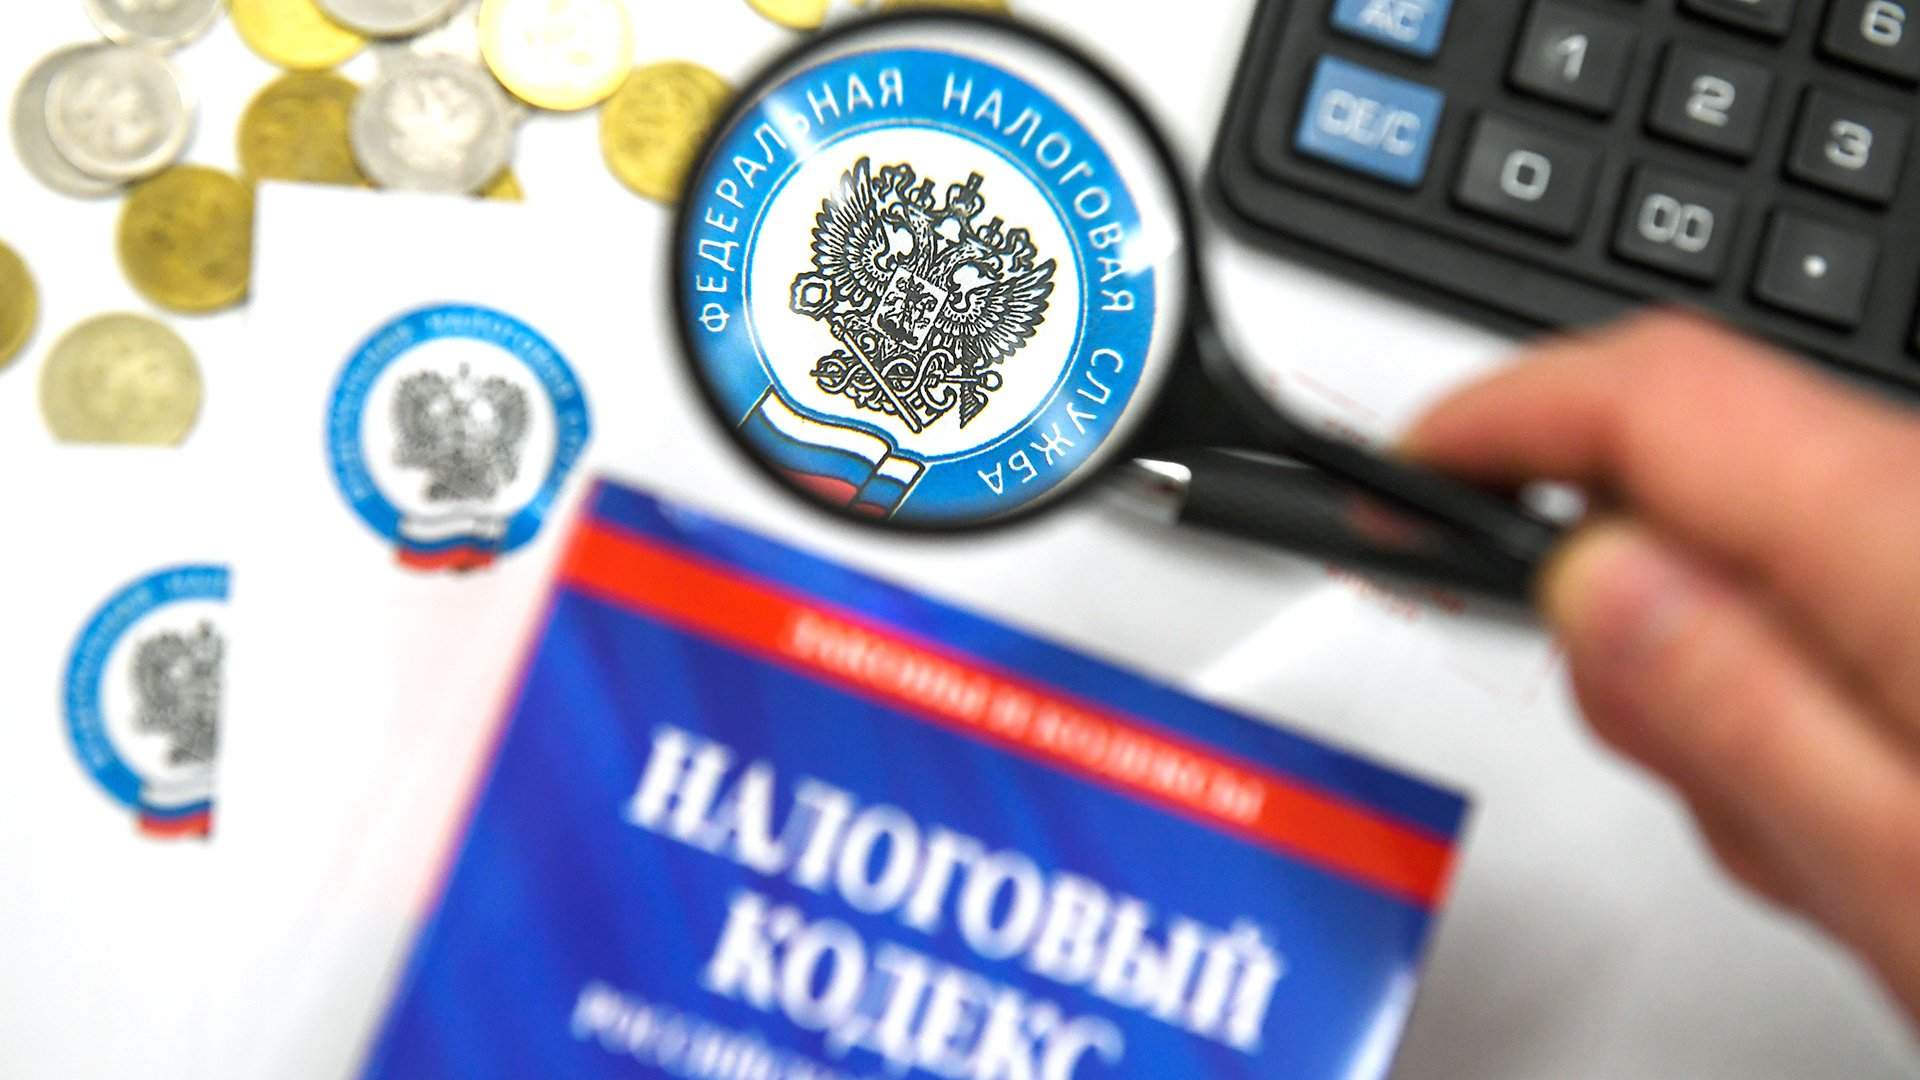 НДФЛ с совокупного дохода свыше 5 млн рублей рассчитывается по прогрессивной ставке.